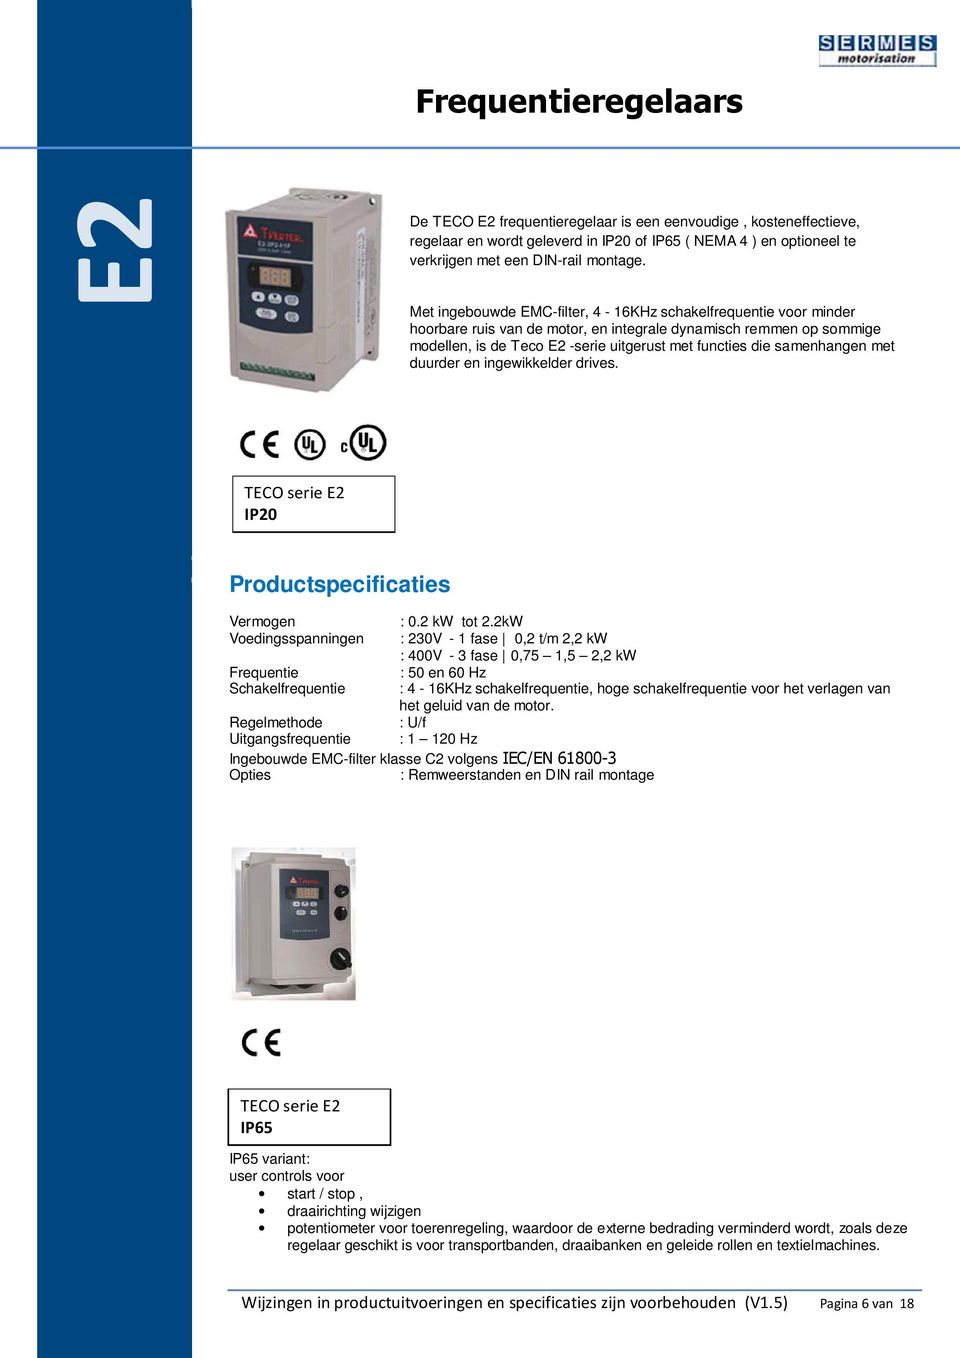 samenhangen met duurder en ingewikkelder drives. TECO serie E2 IP20 Productspecificaties Vermogen Voedingsspanningen Schakelfrequentie : 0.2 kw tot 2.